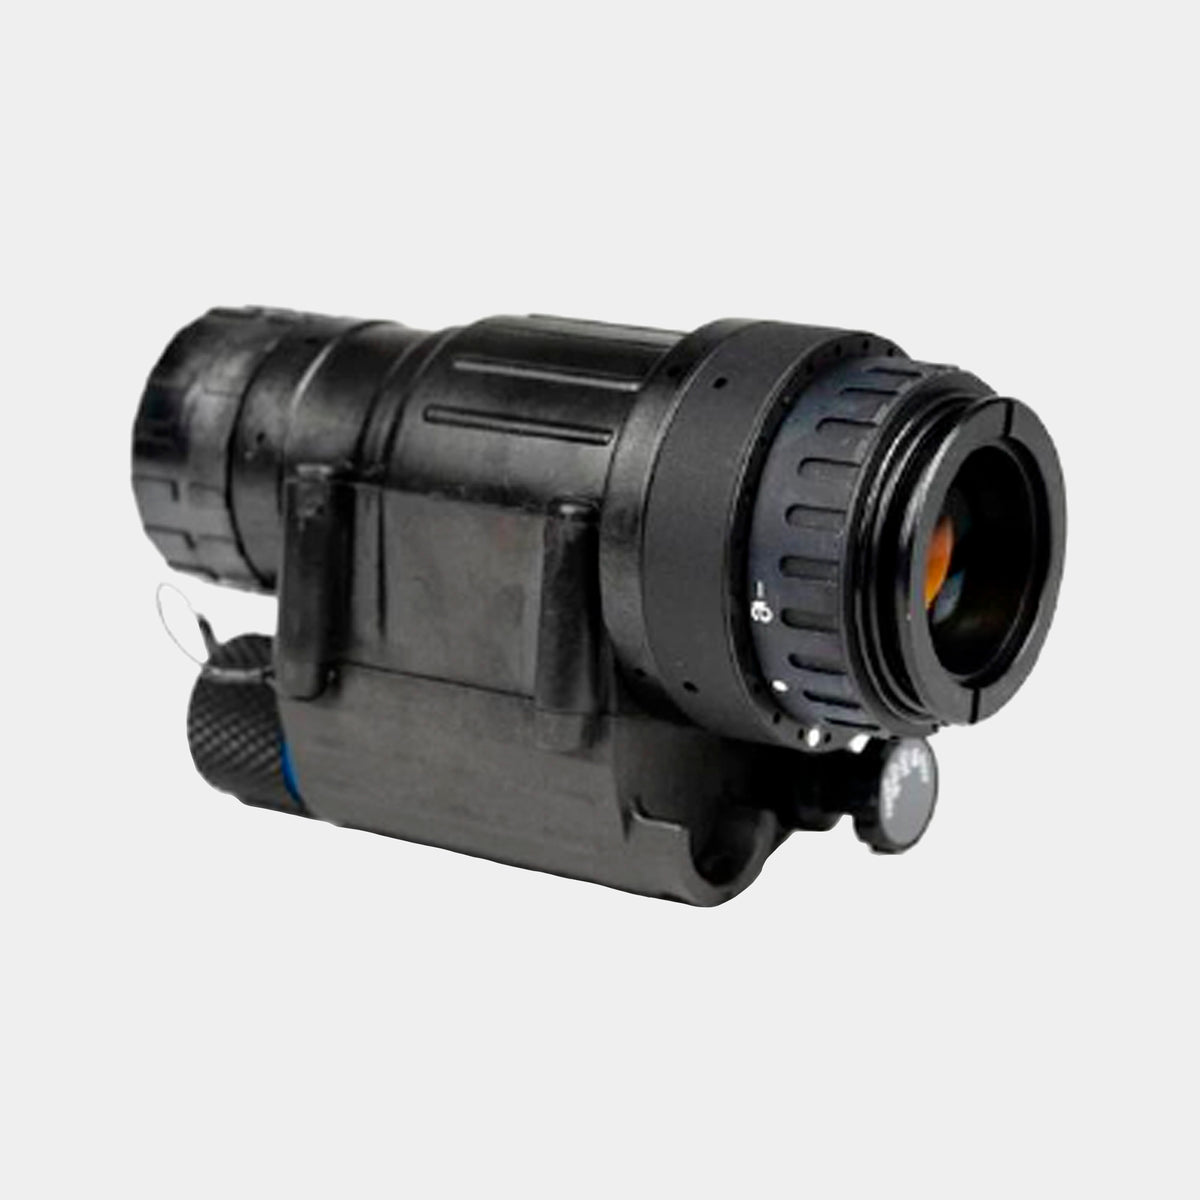 Dispositivo de visión nocturna monocular militar y pvs-14, monocular.,  diverso, lente, lente de la cámara png